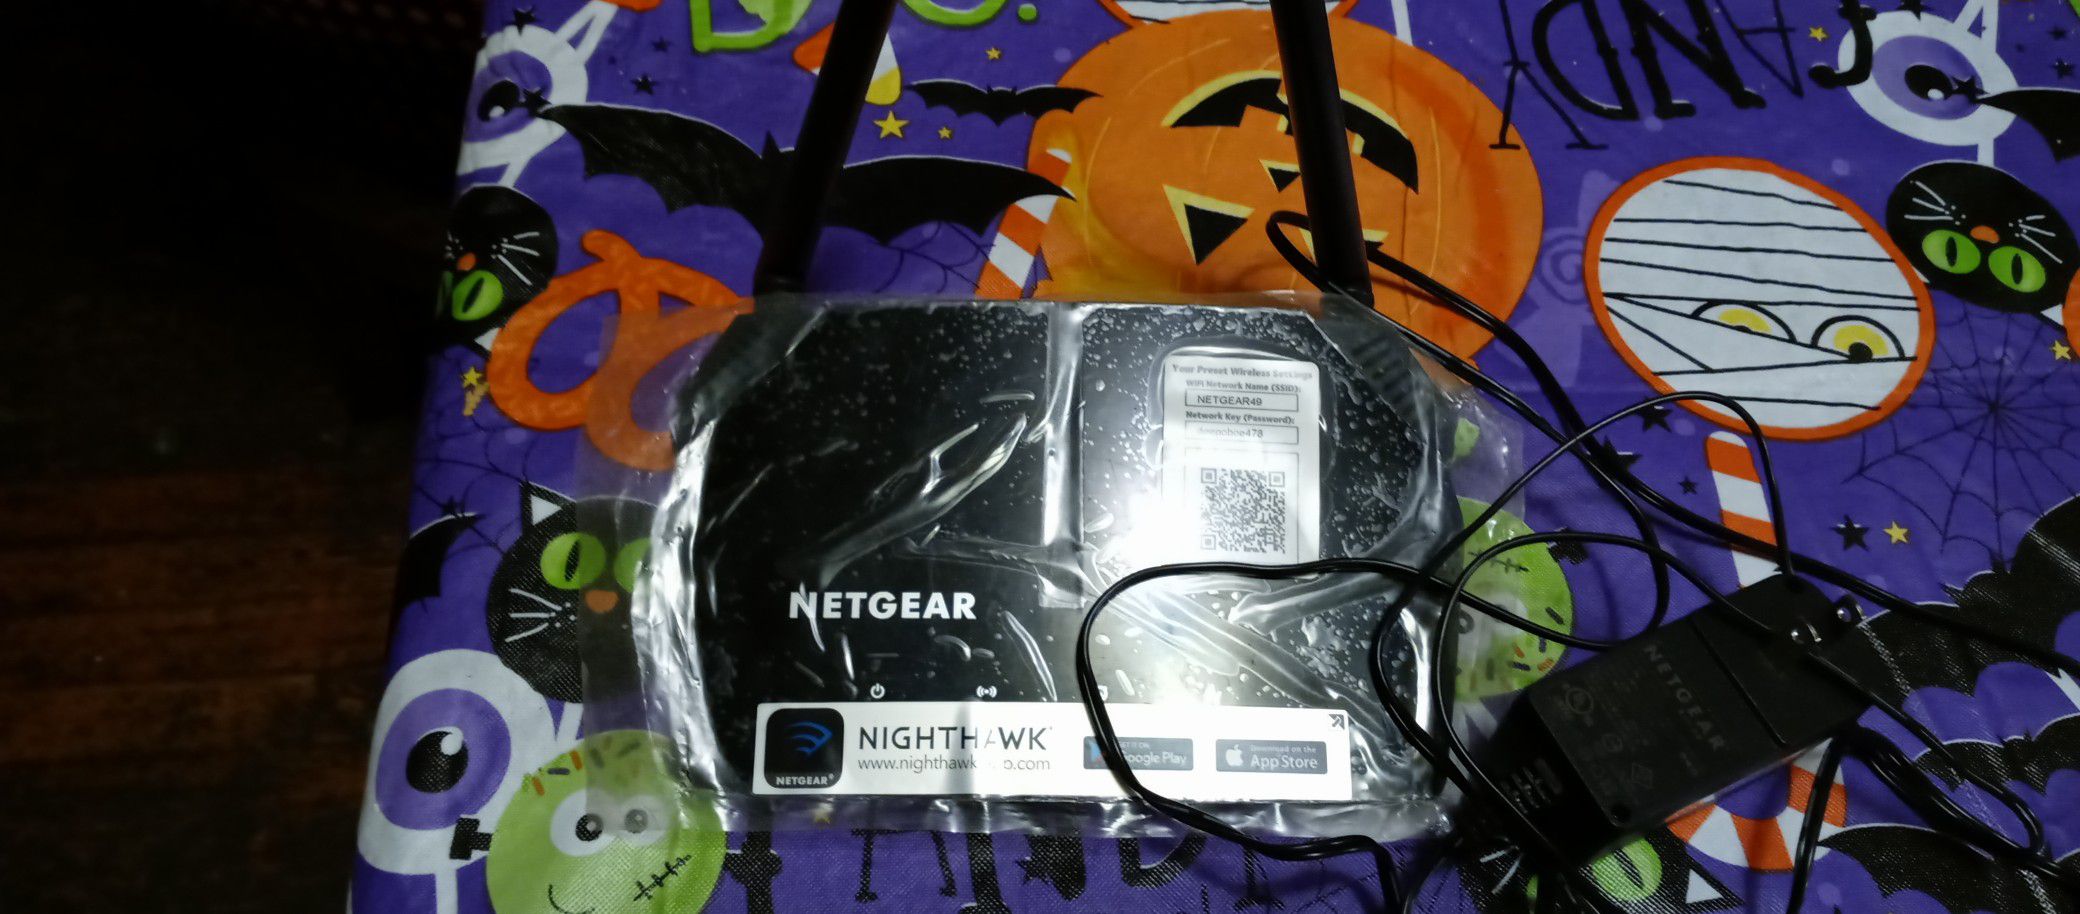 Netgear Nighthawk router